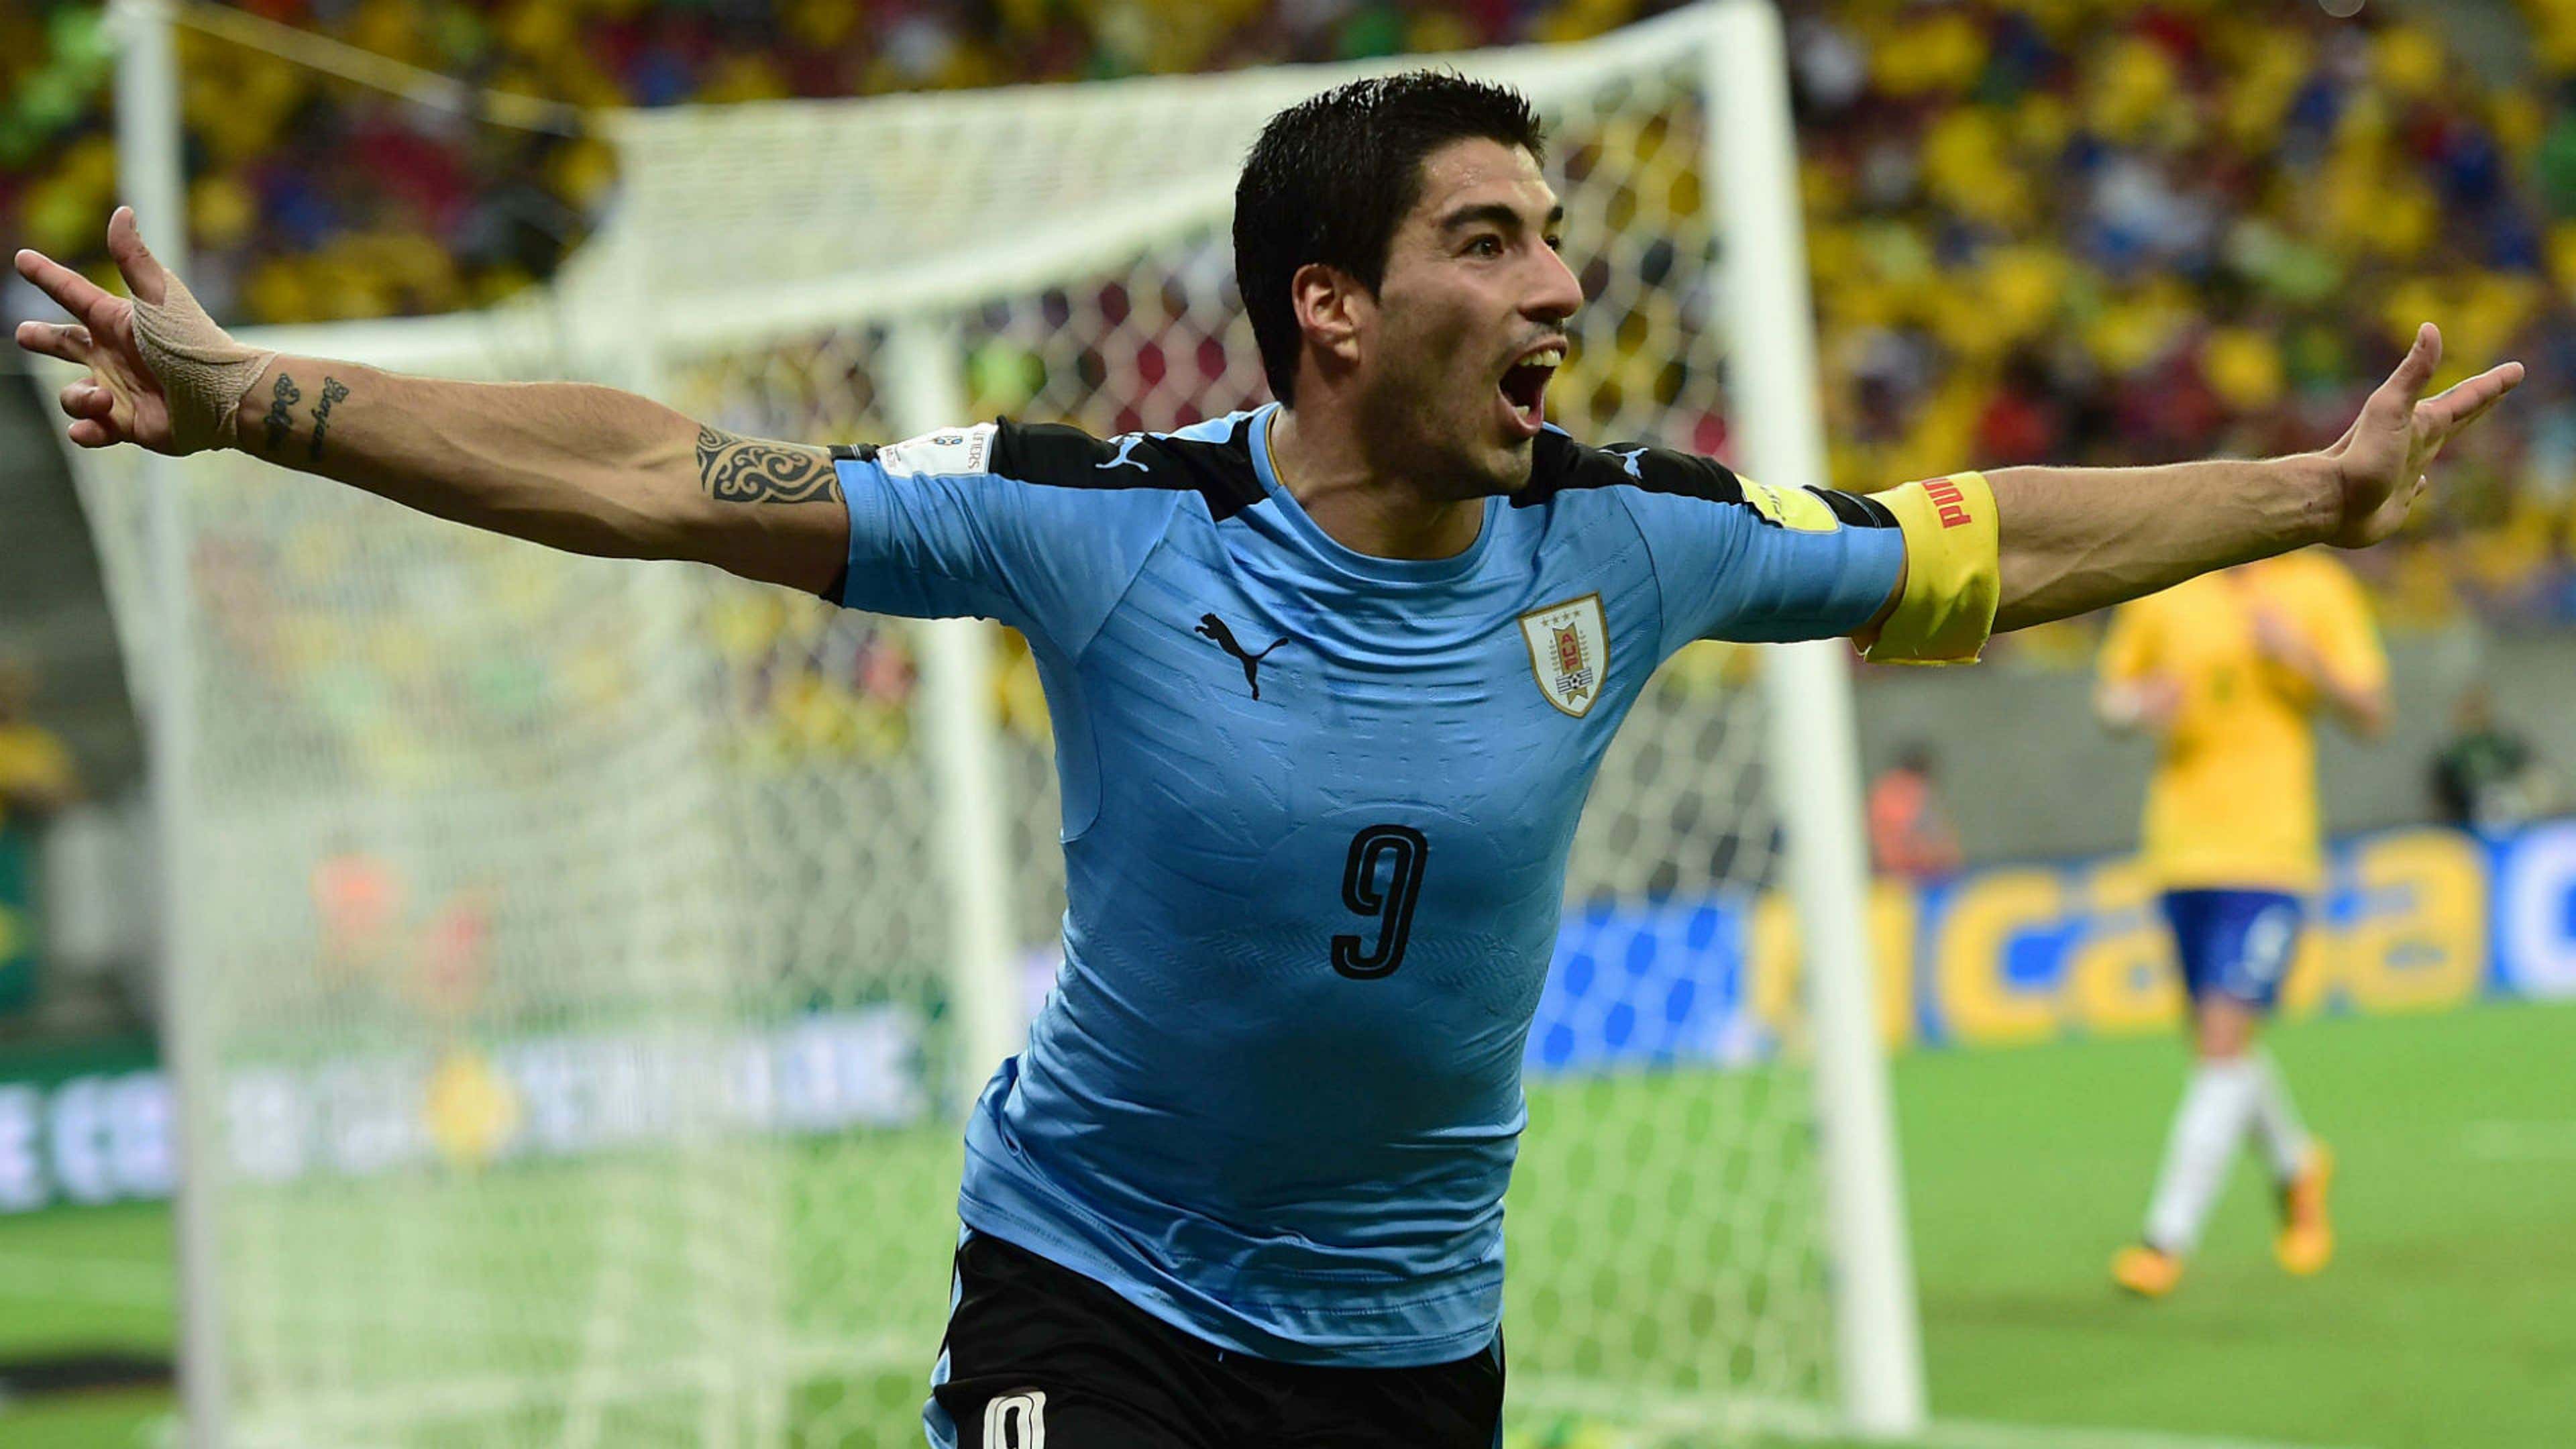 La FIFA permitirá a Uruguay continuar con las cuatro estrellas en su escudo